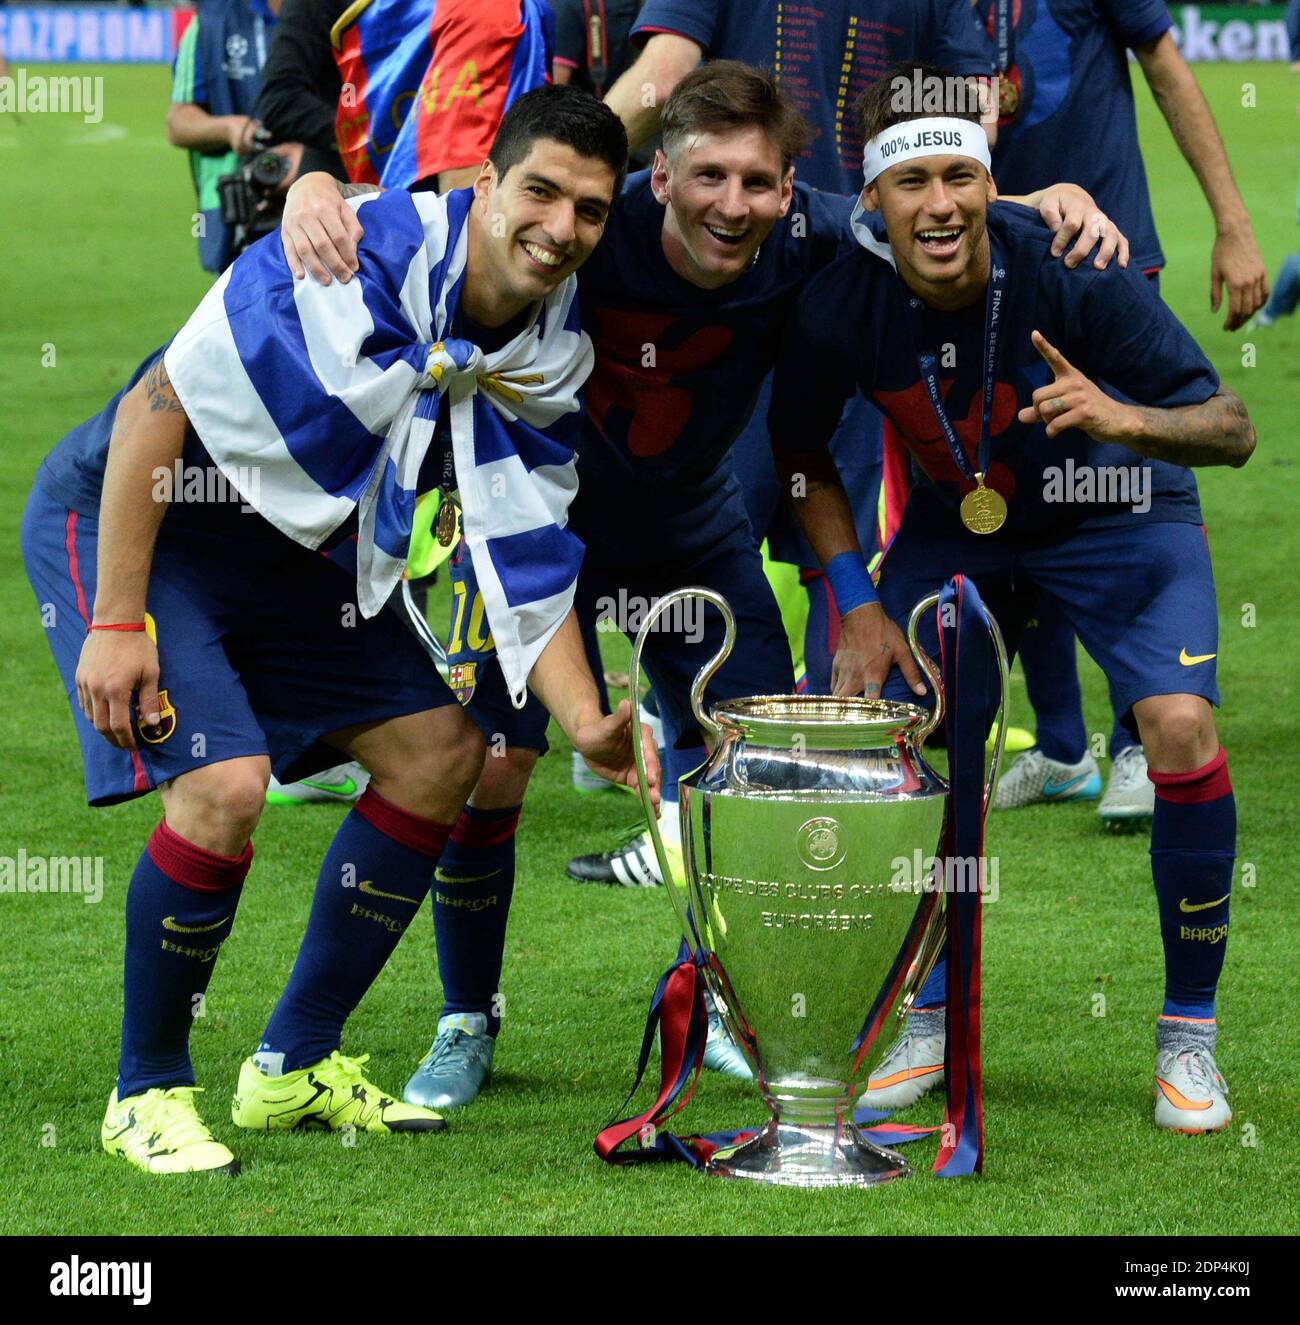 Messi And Neymar And Suarez Wallpapers  Visca barça Cr7 vs messi Fotos  de fútbol